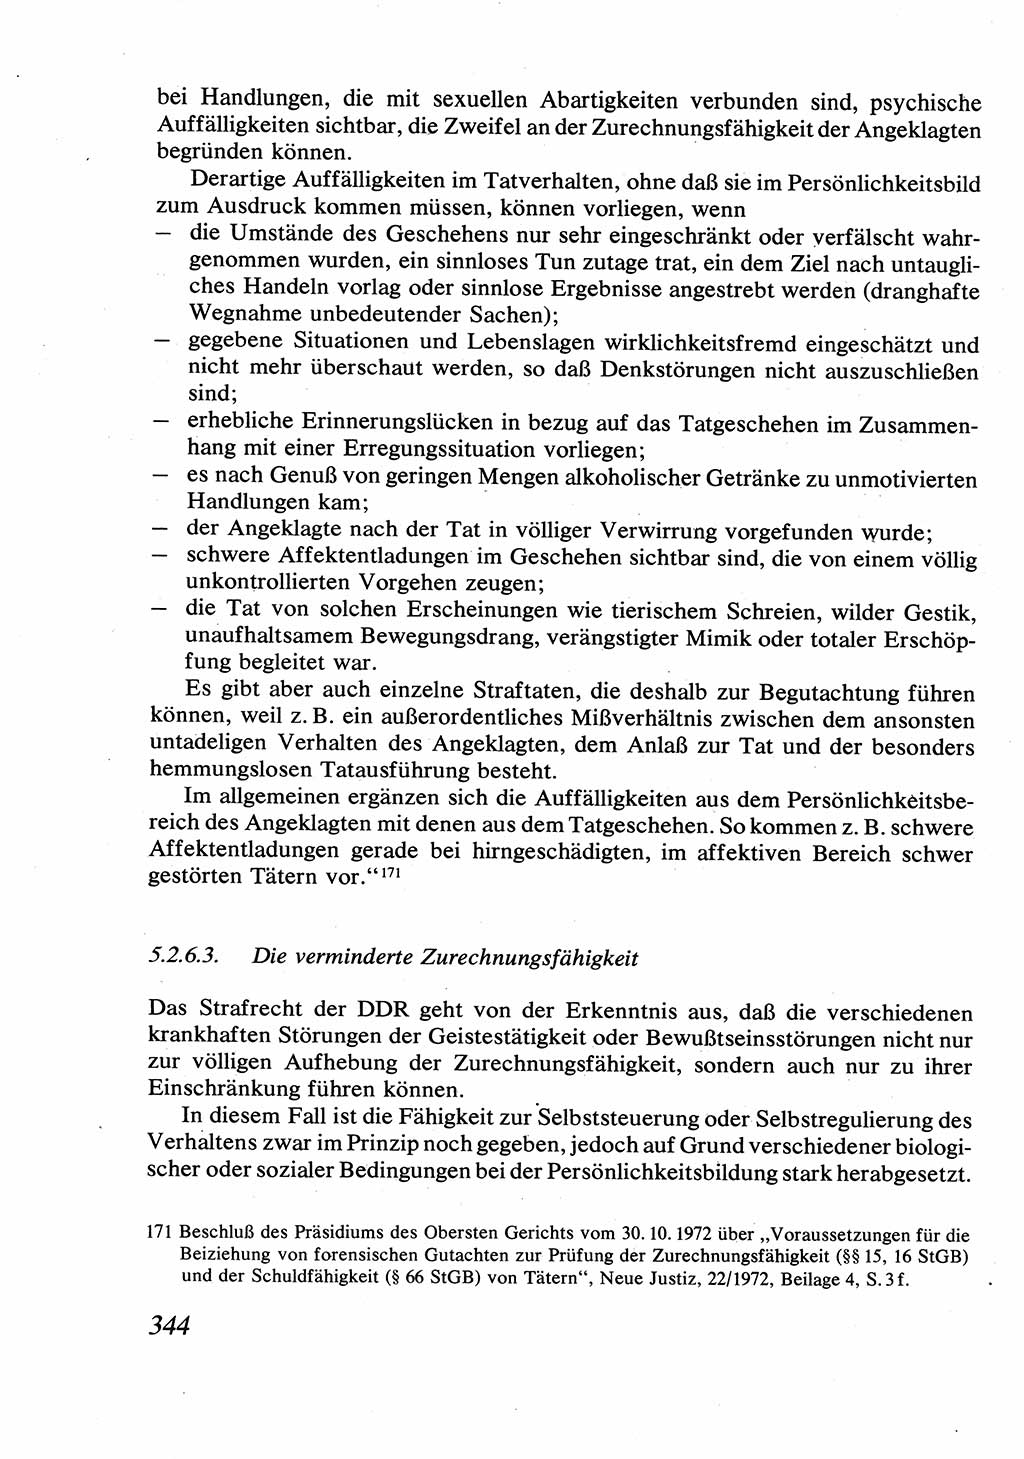 Strafrecht [Deutsche Demokratische Republik (DDR)], Allgemeiner Teil, Lehrbuch 1976, Seite 344 (Strafr. DDR AT Lb. 1976, S. 344)